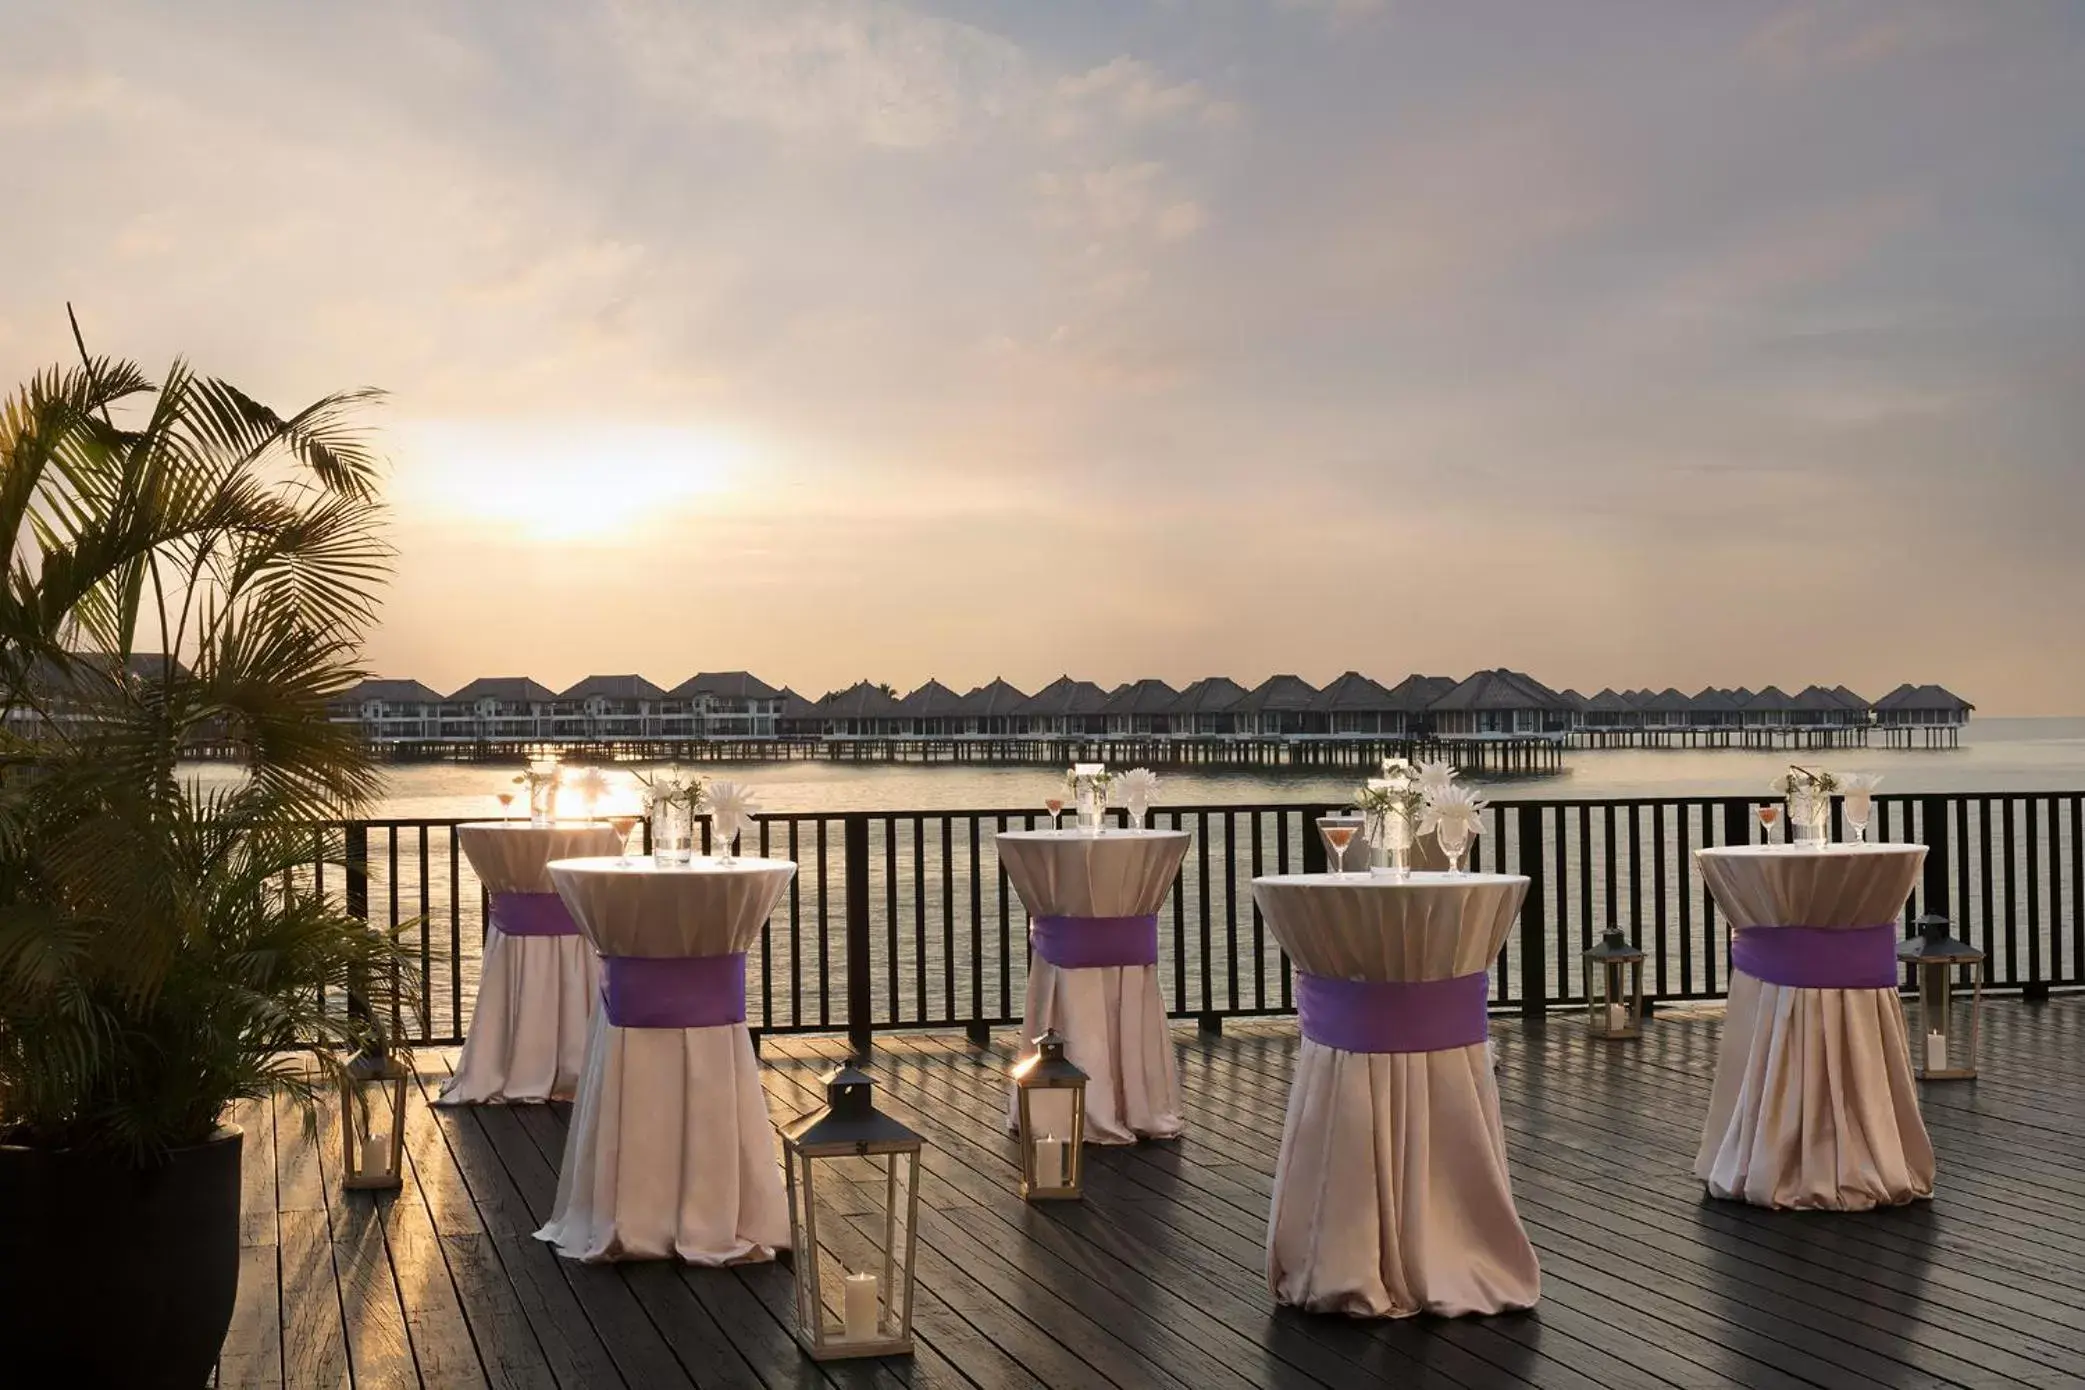 Banquet/Function facilities, Banquet Facilities in Avani Sepang Goldcoast Resort